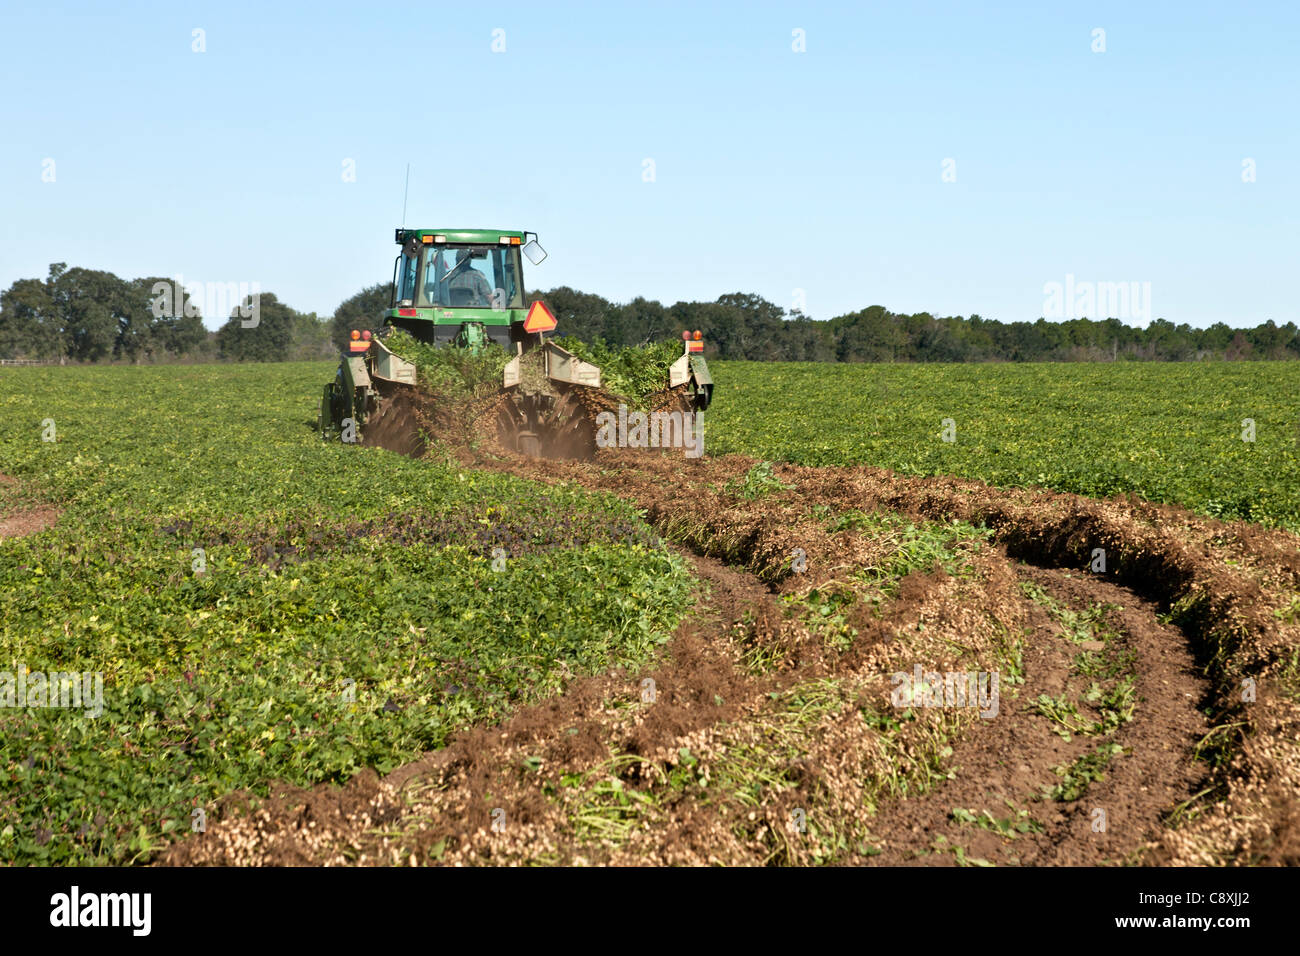 Récolte d'arachides, tracteur John Deere inversant la récolte d'arachides. Banque D'Images